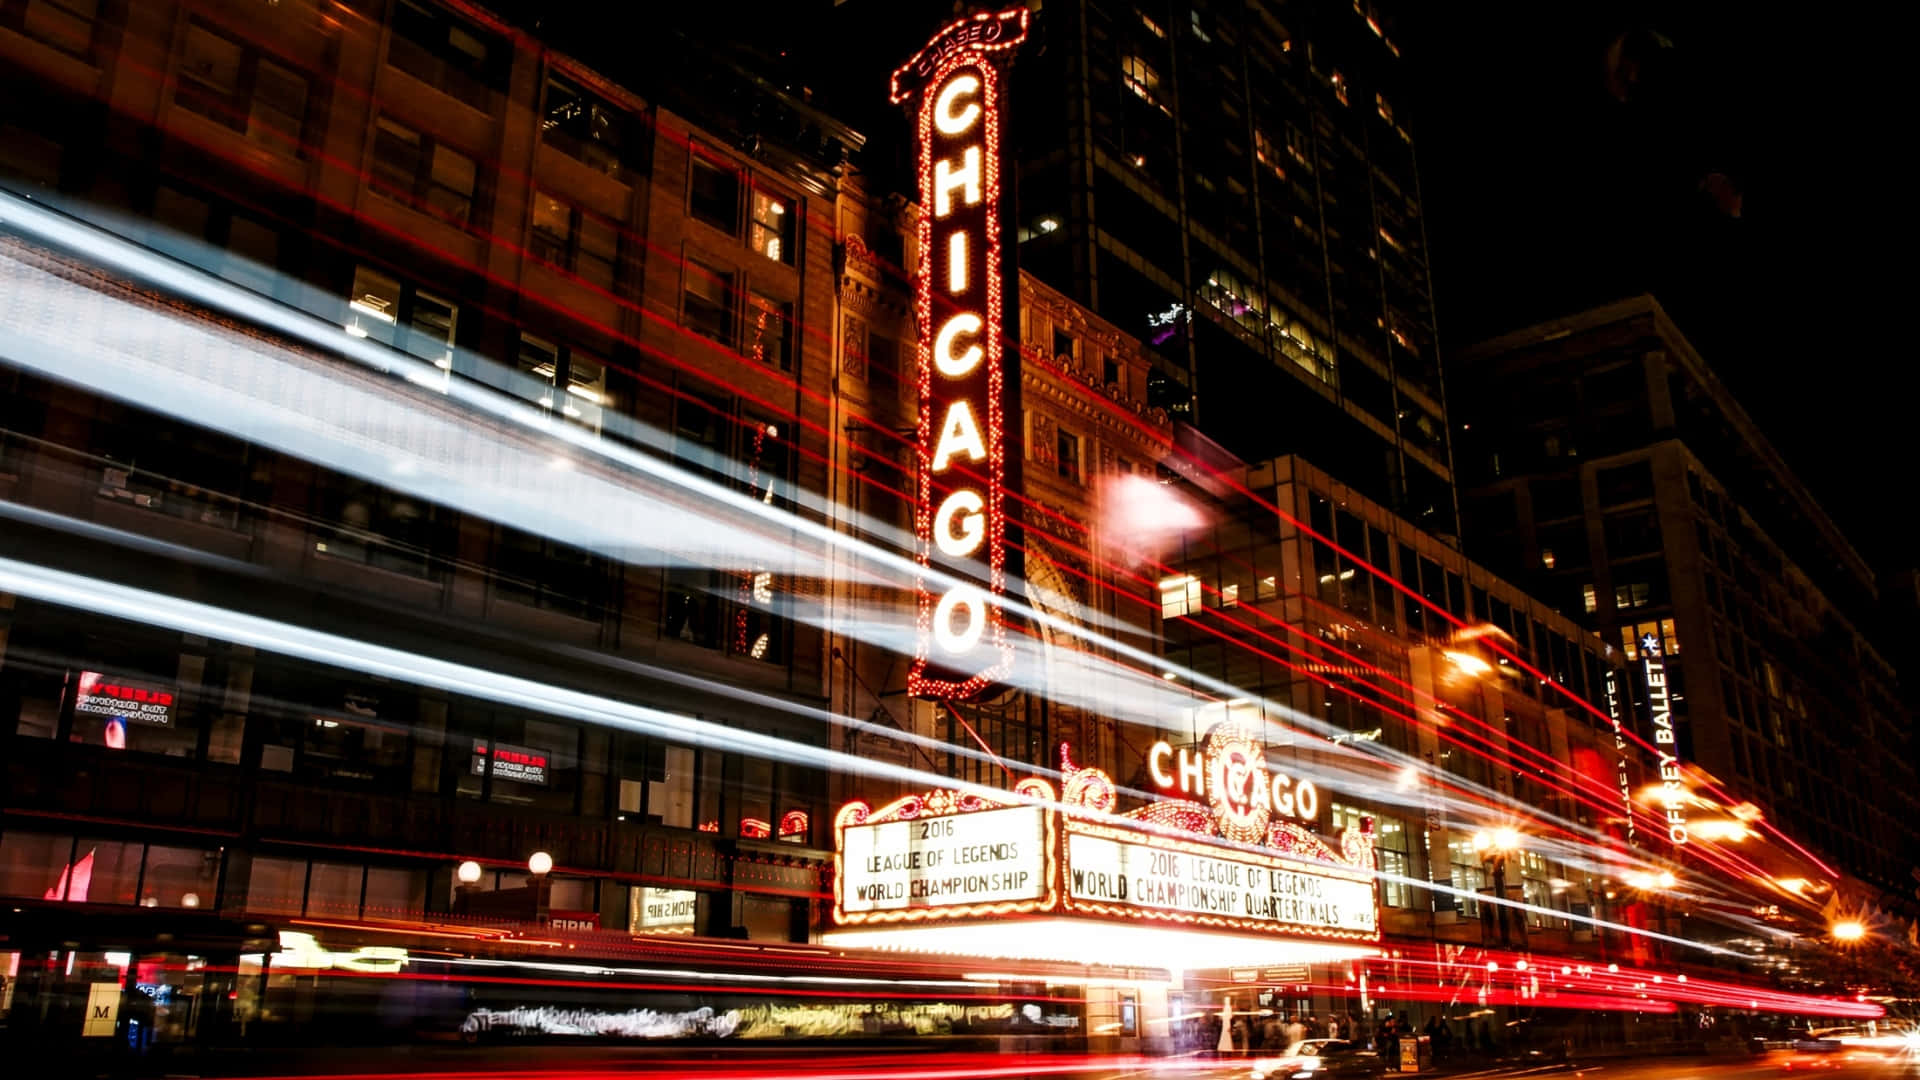 Det spektakulære skyline af Chicago om natten er funktion i dette tapet. Wallpaper